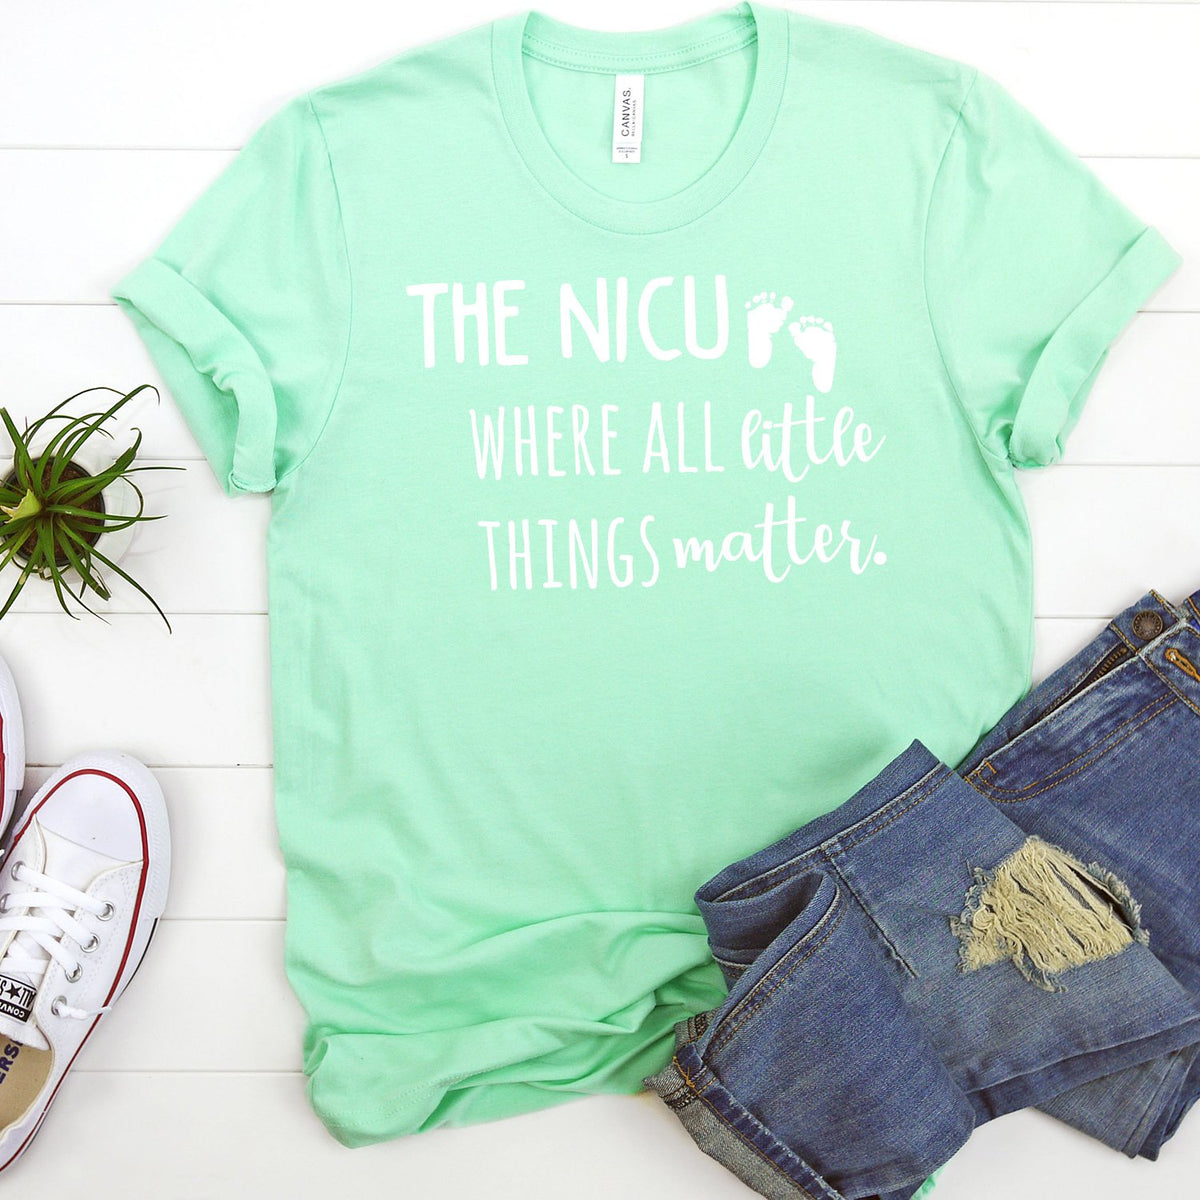 The NICU Where All Little Things Matter - Short Sleeve Tee Shirt